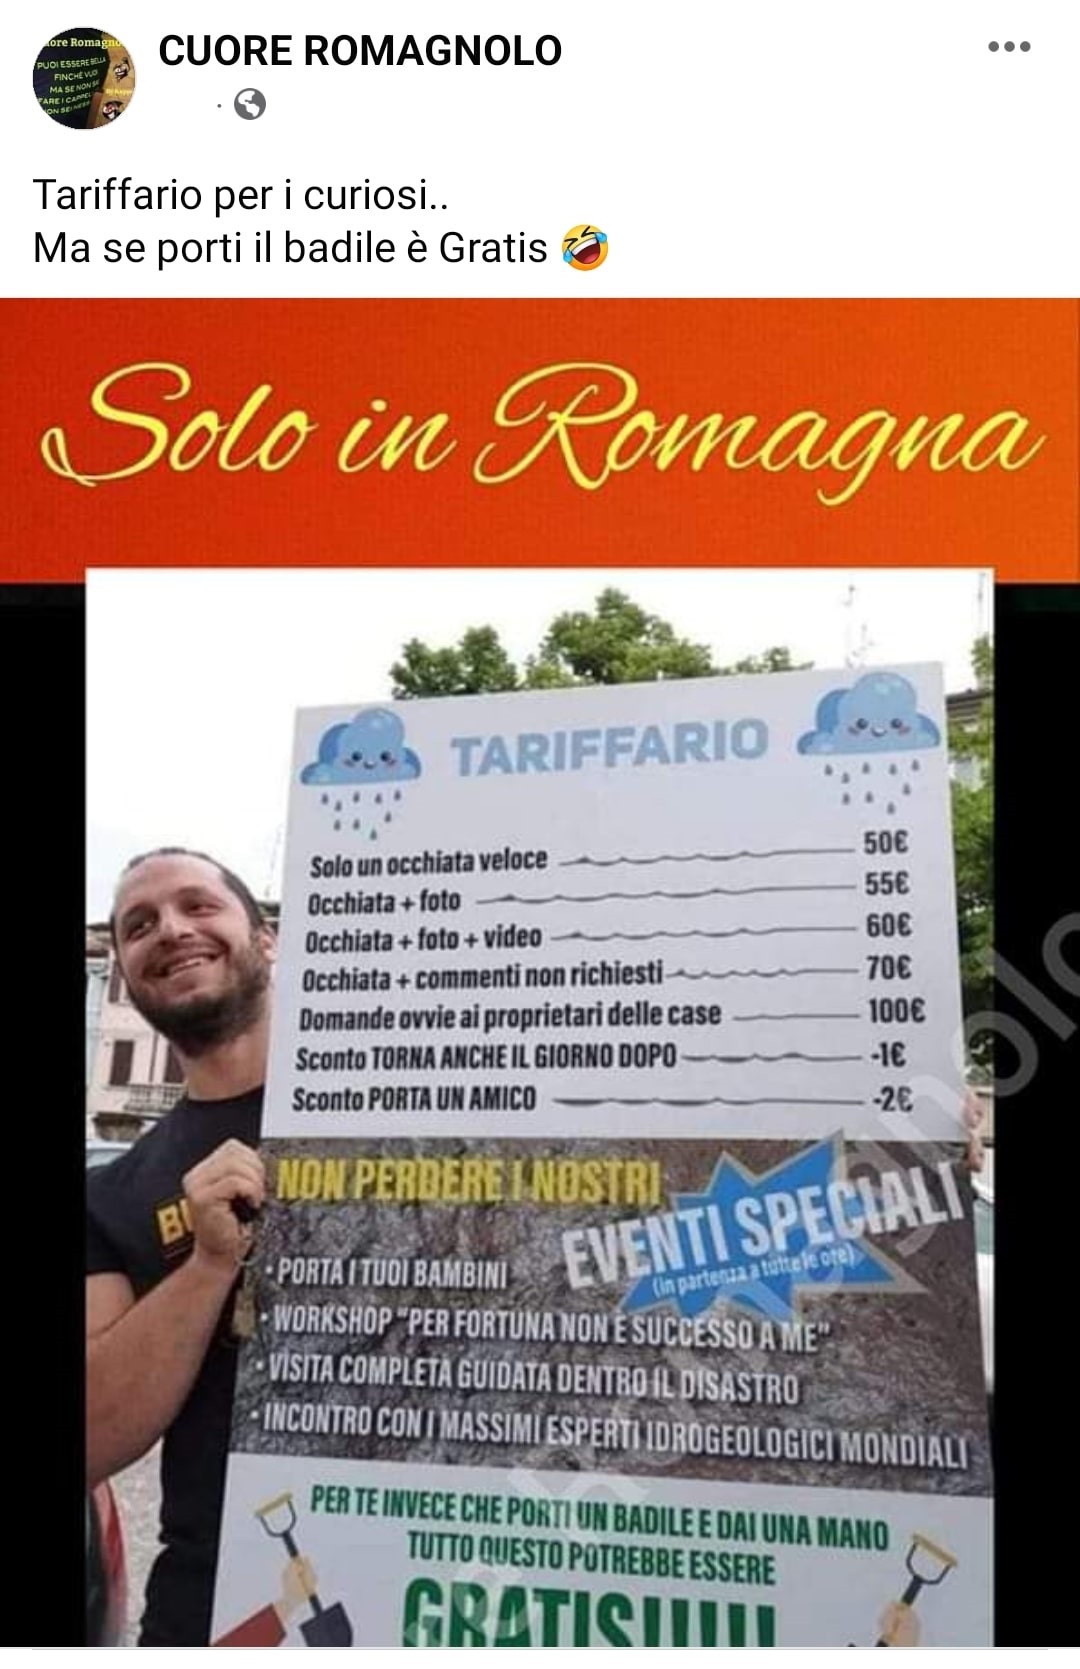 Direttamente da Cesena, il cartello 'contro' i curiosi. Fonte: Cuore Romagnolo - Facebook